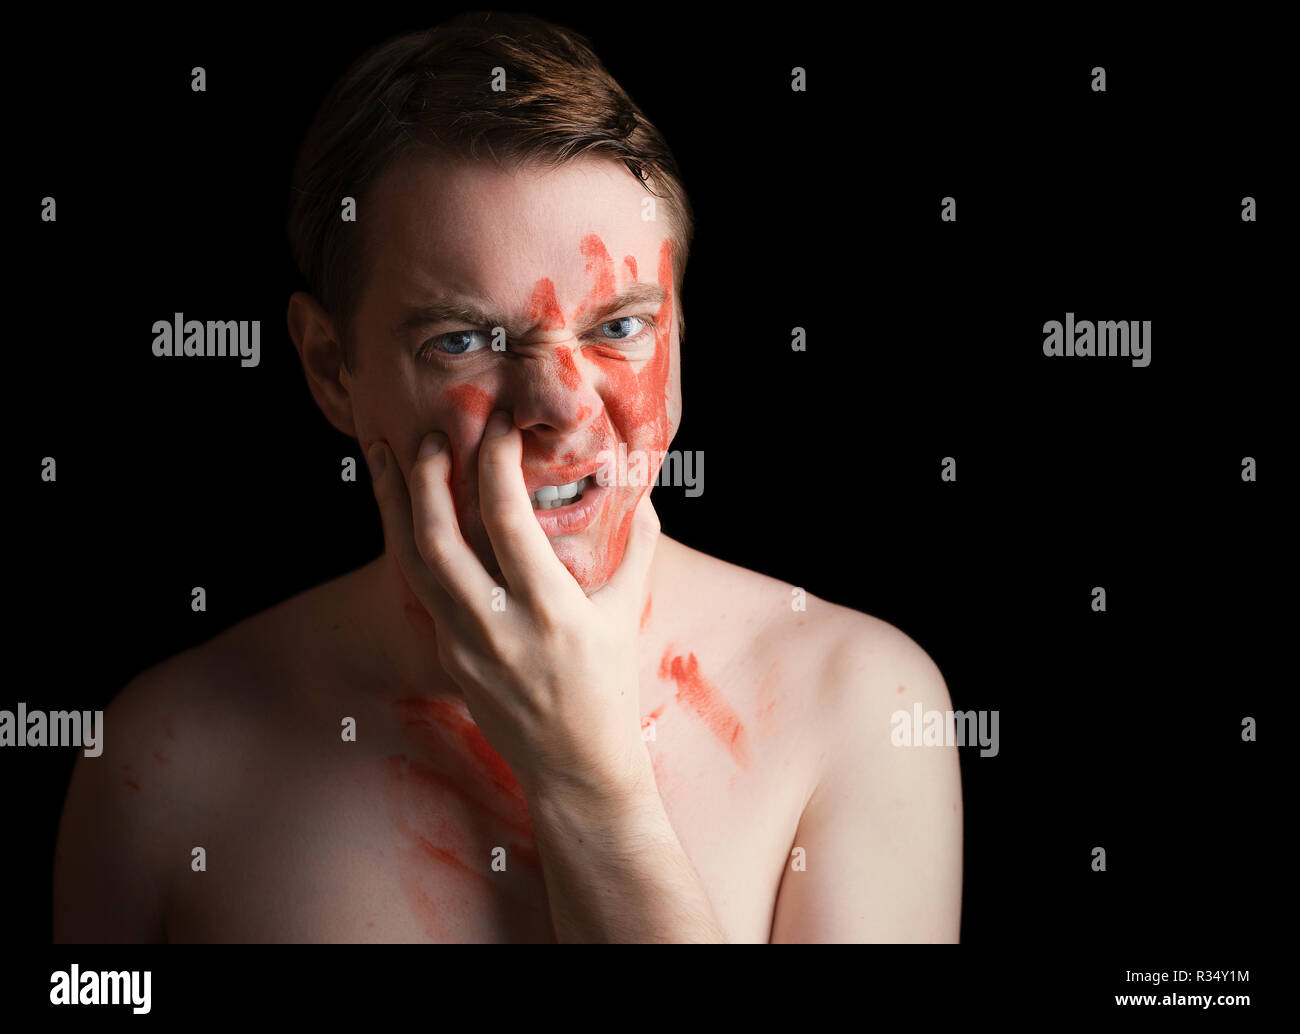 Portrait de jeune homme en colère avec de la peinture sur son visage sur fond sombre. Banque D'Images